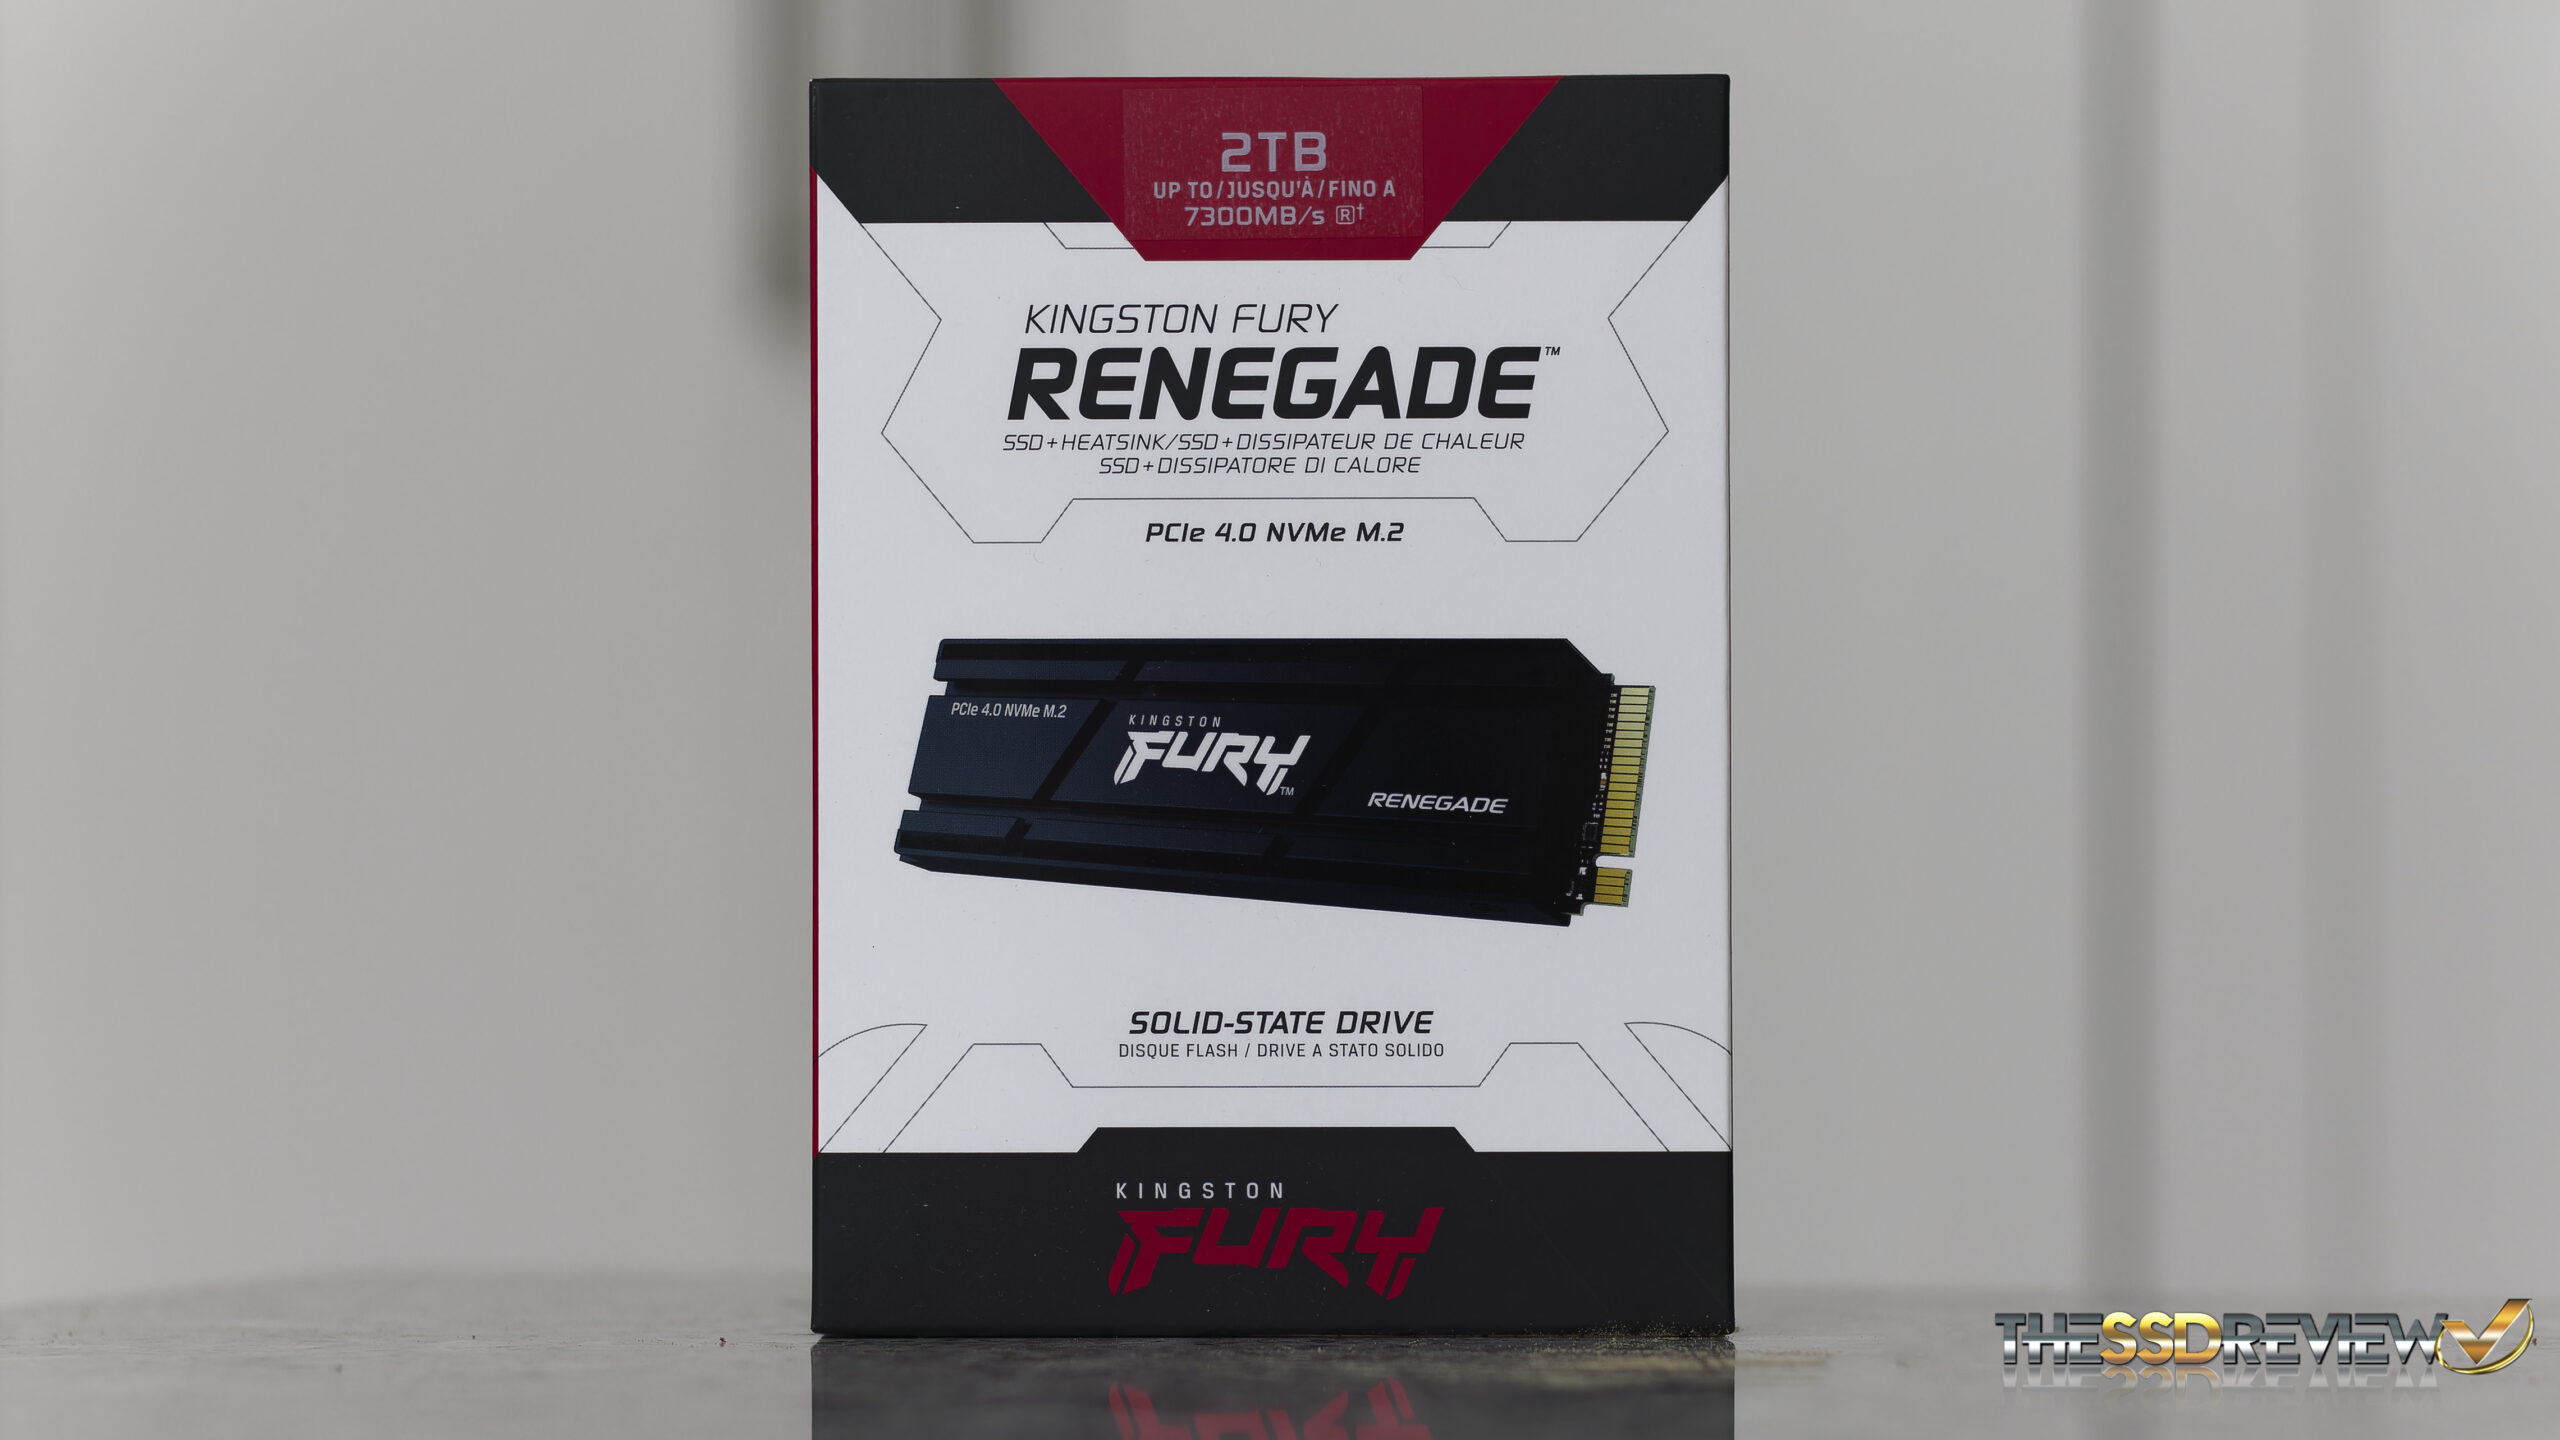 Kingston FURY Renegade 2TB SSD Review - Niche Gamer